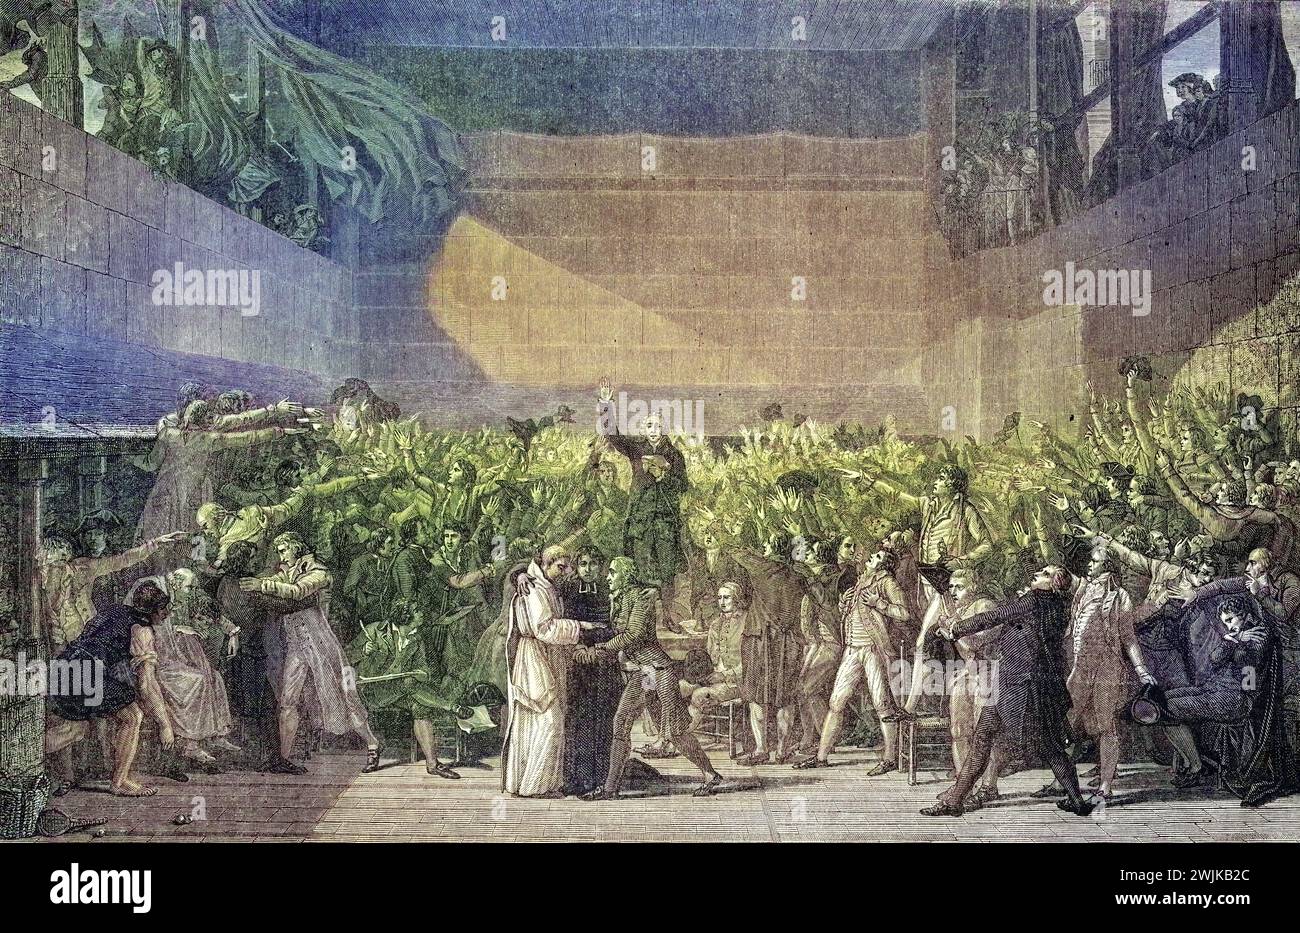 Schwur auf dem Tennisplatz des Jeu de Paume, 20. Juni 1789, Frankreich, Historisch, digital restaurierte Reproduktion von einer Vorlage aus dem 19. Jahrhundert, Datum nicht angegeben Stockfoto